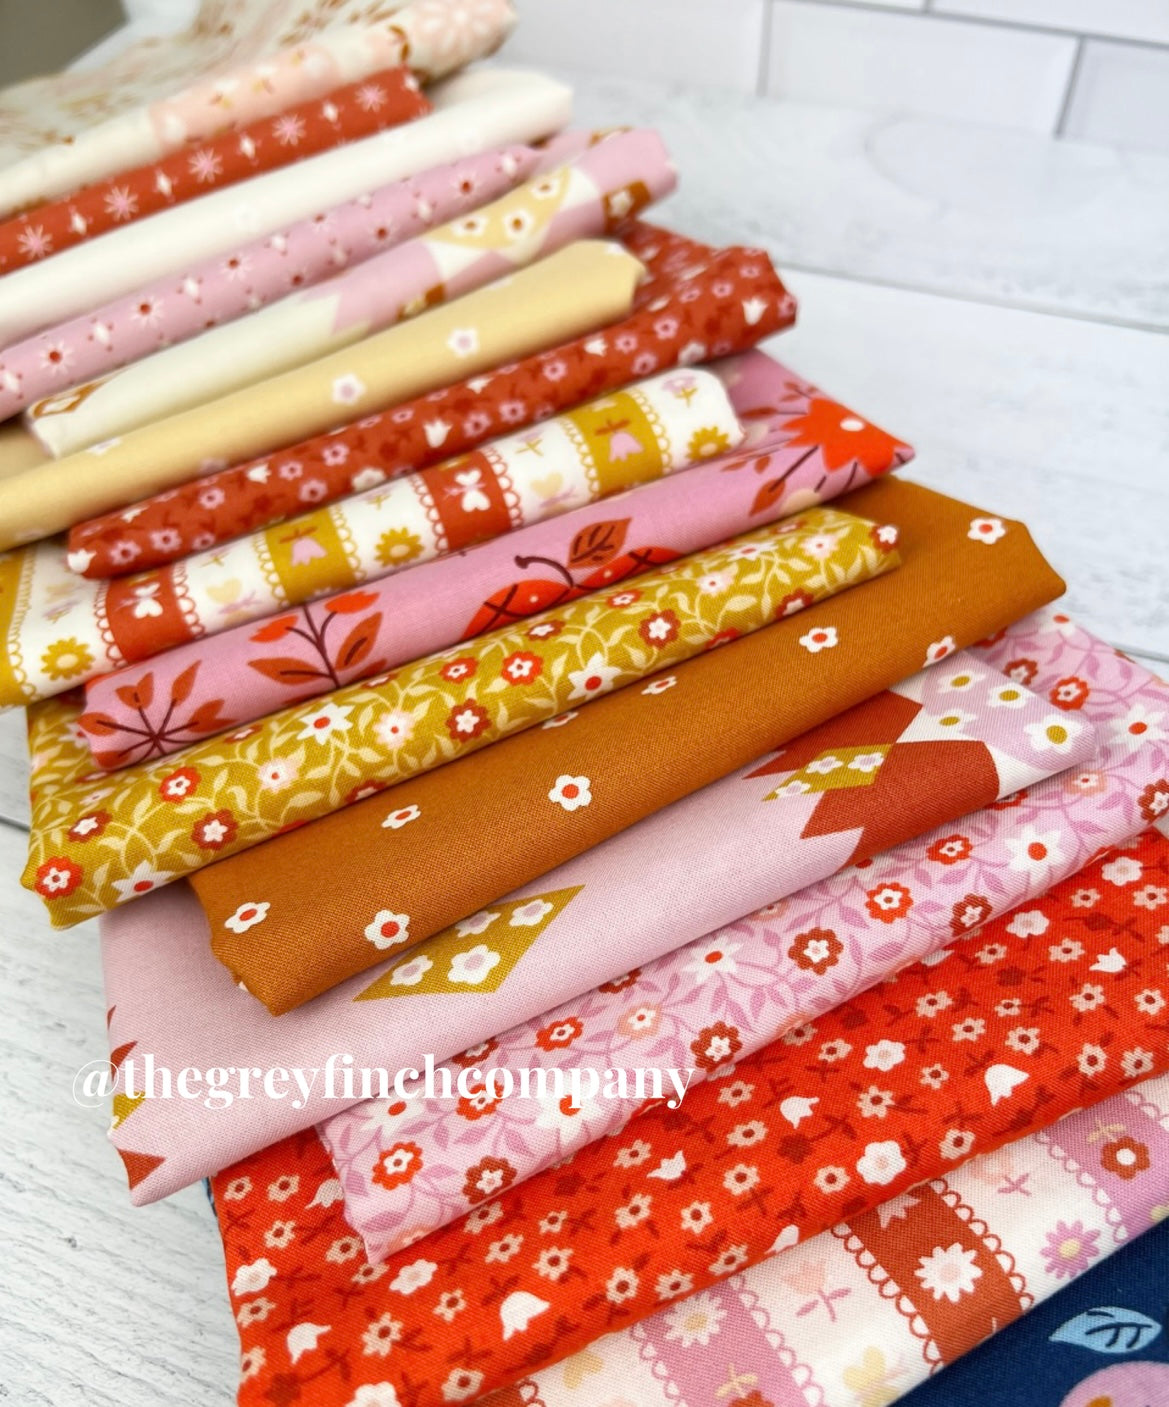 Lil Collection Bundle by Kimberly Kight - 22 fabrics - Moda Fabrics